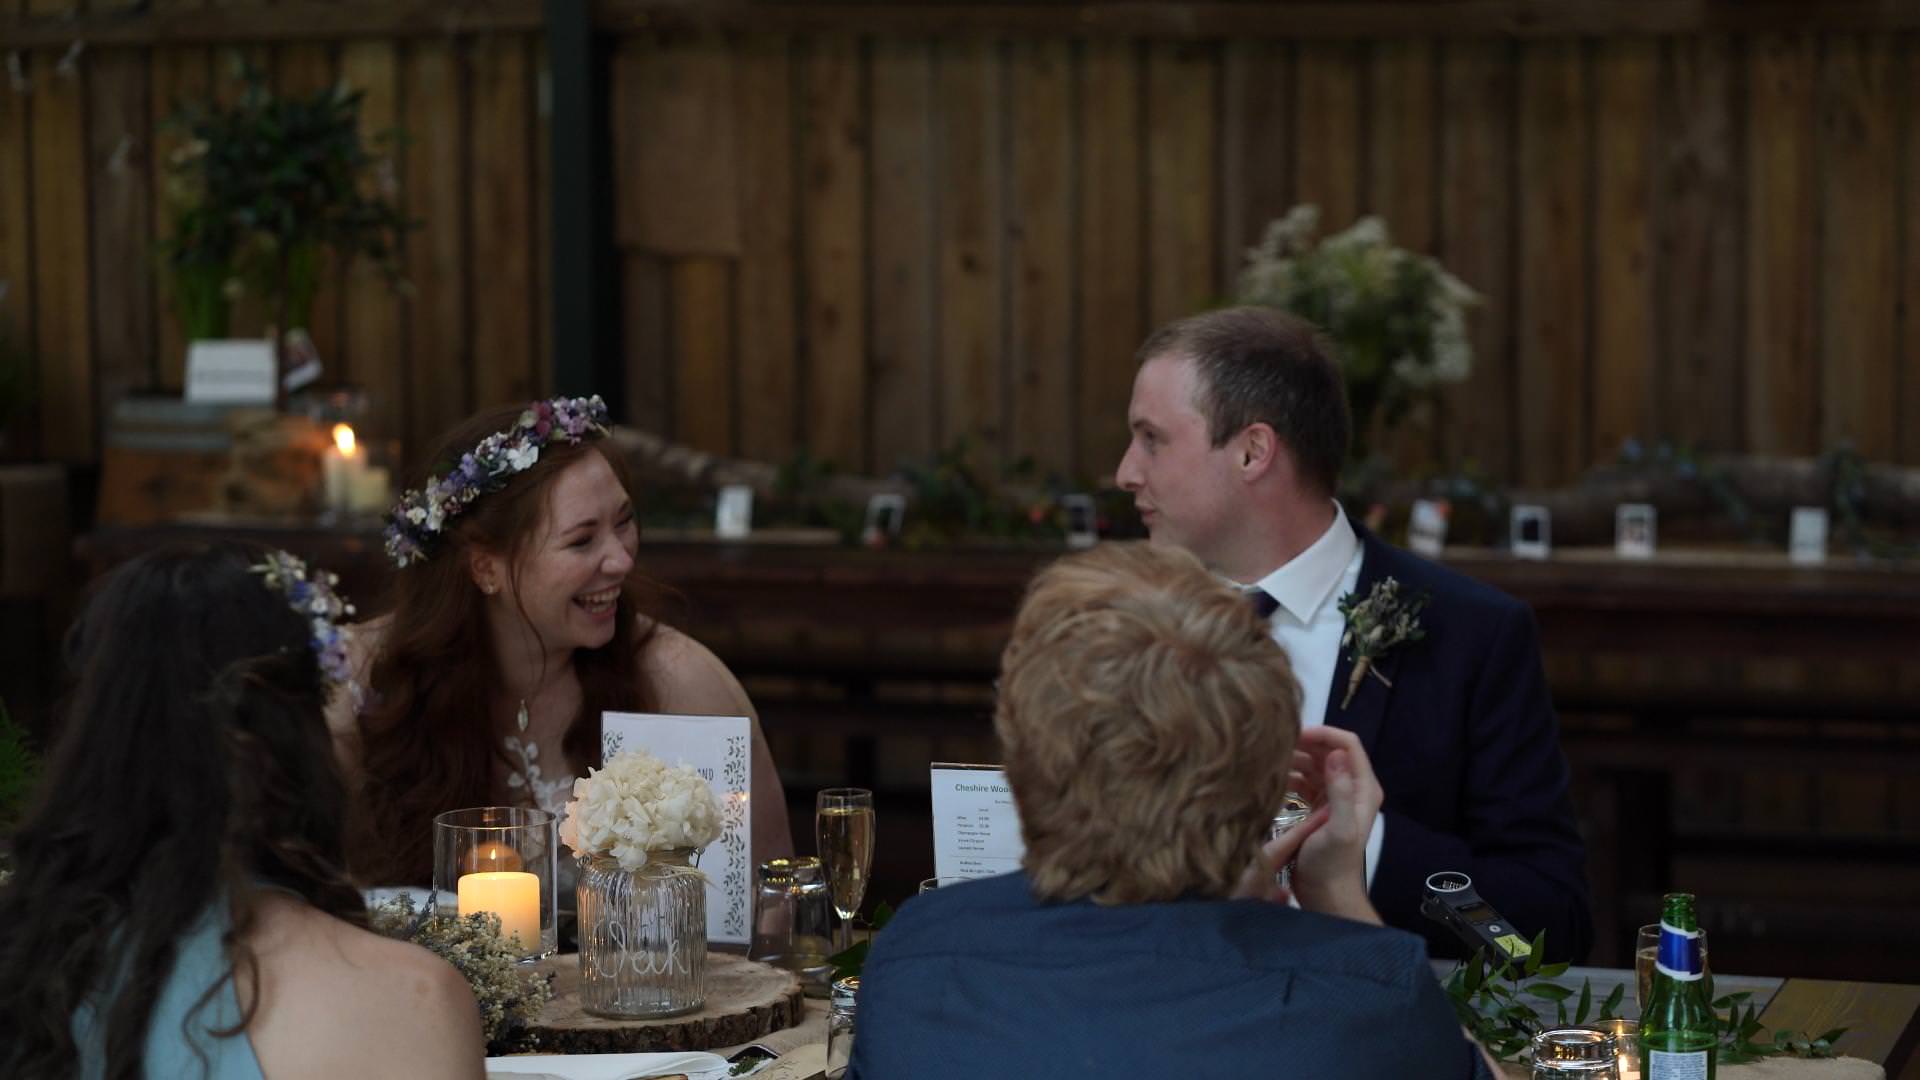 video still of wedding speeches inside barn wedding